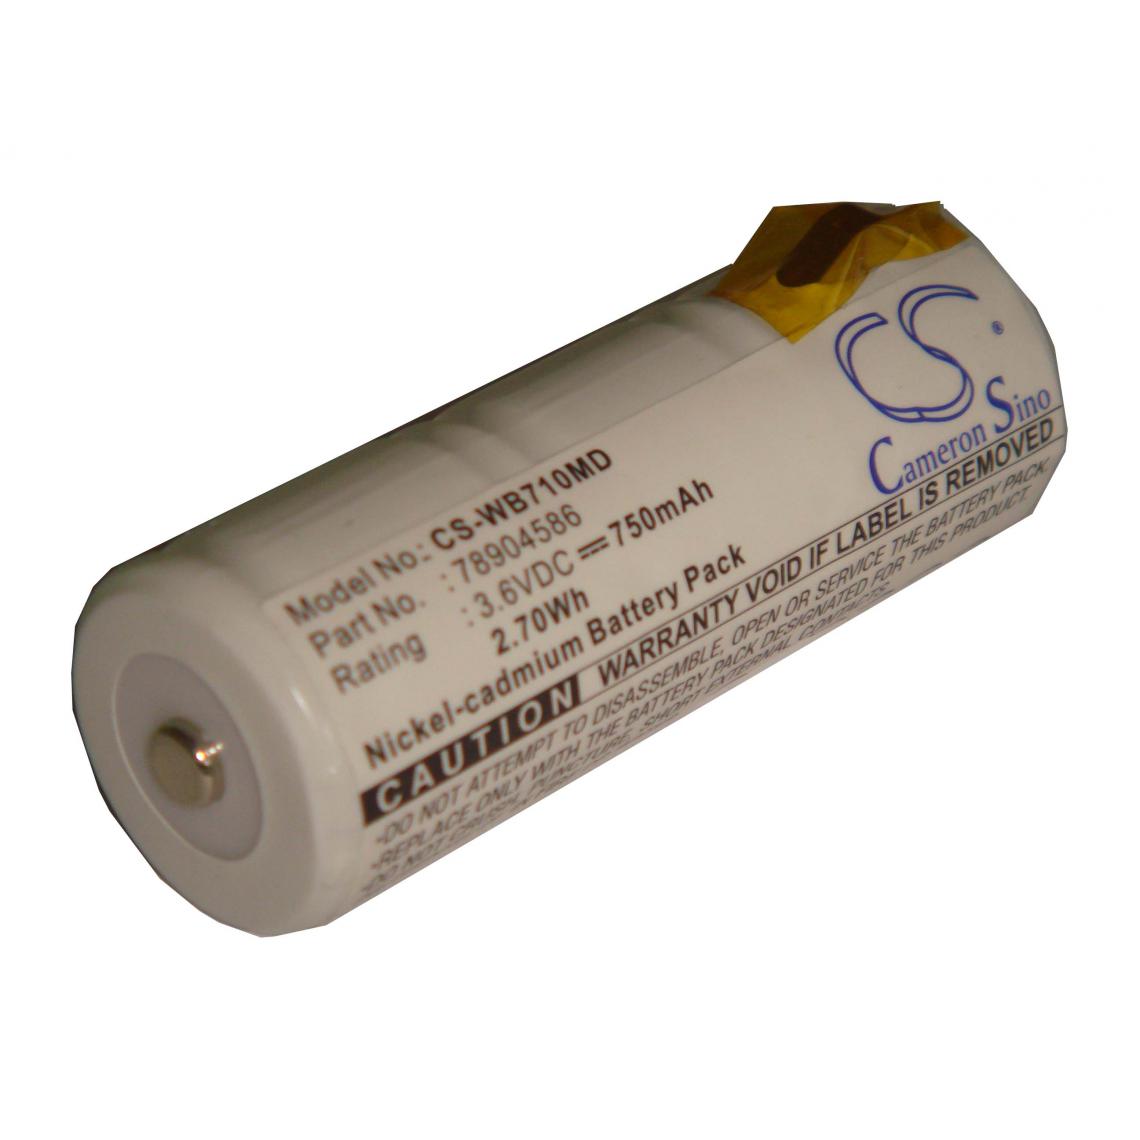 Vhbw - vhbw Batterie compatible avec Welch-Allyn 71110, 71150, 71610, 71670, 72200, 72207, 74054, 74710 appareil médical (750mAh, 3,6V, NiCd) - Piles spécifiques